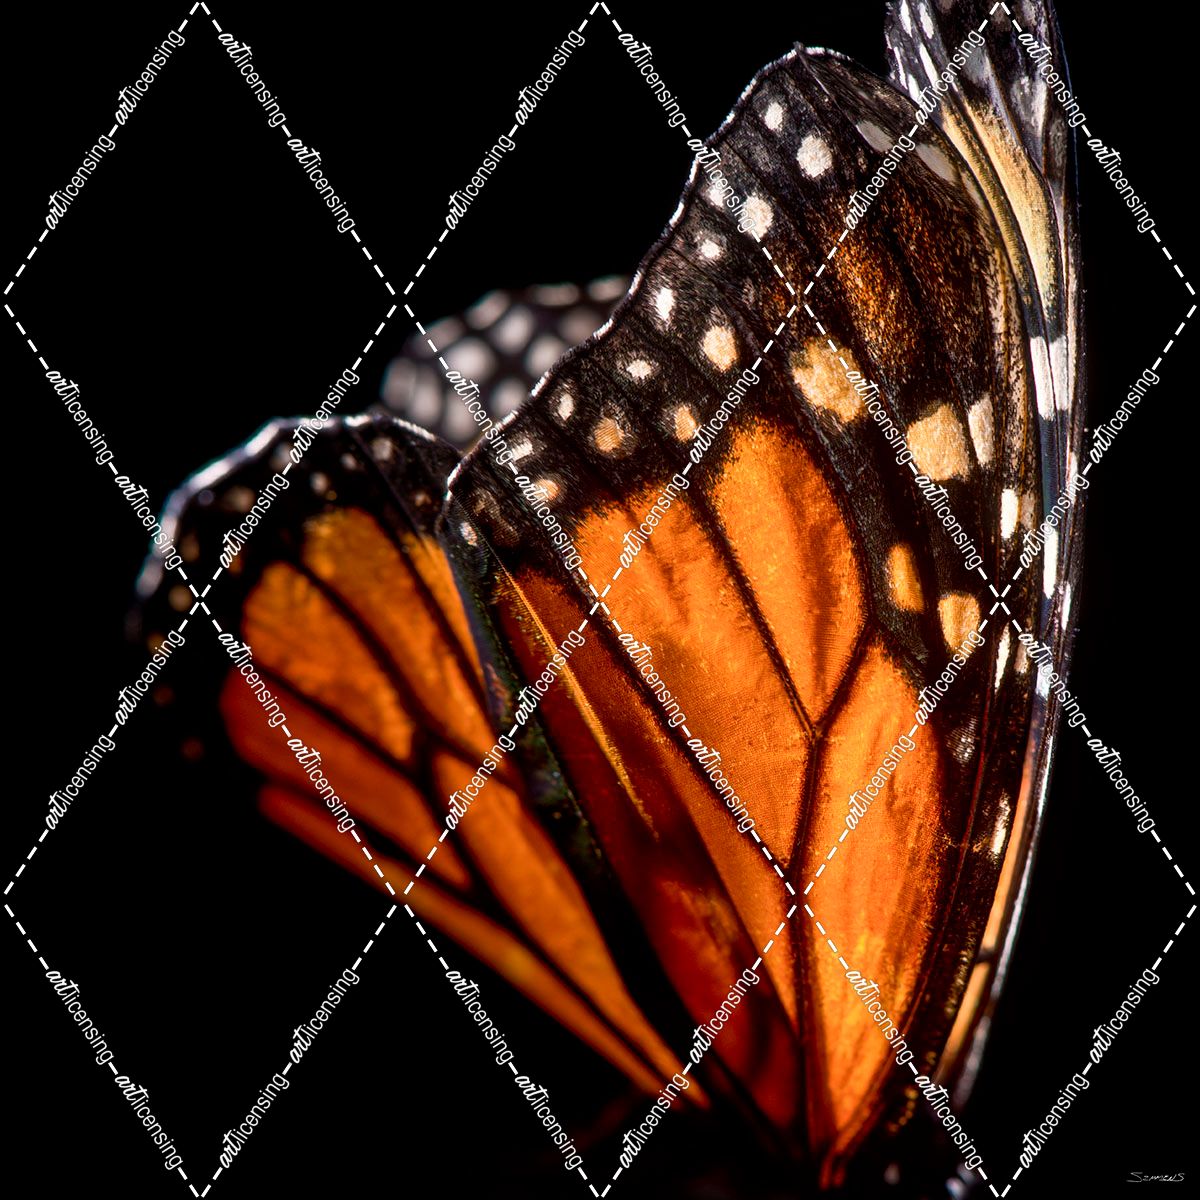 Monarch Butterfly 04